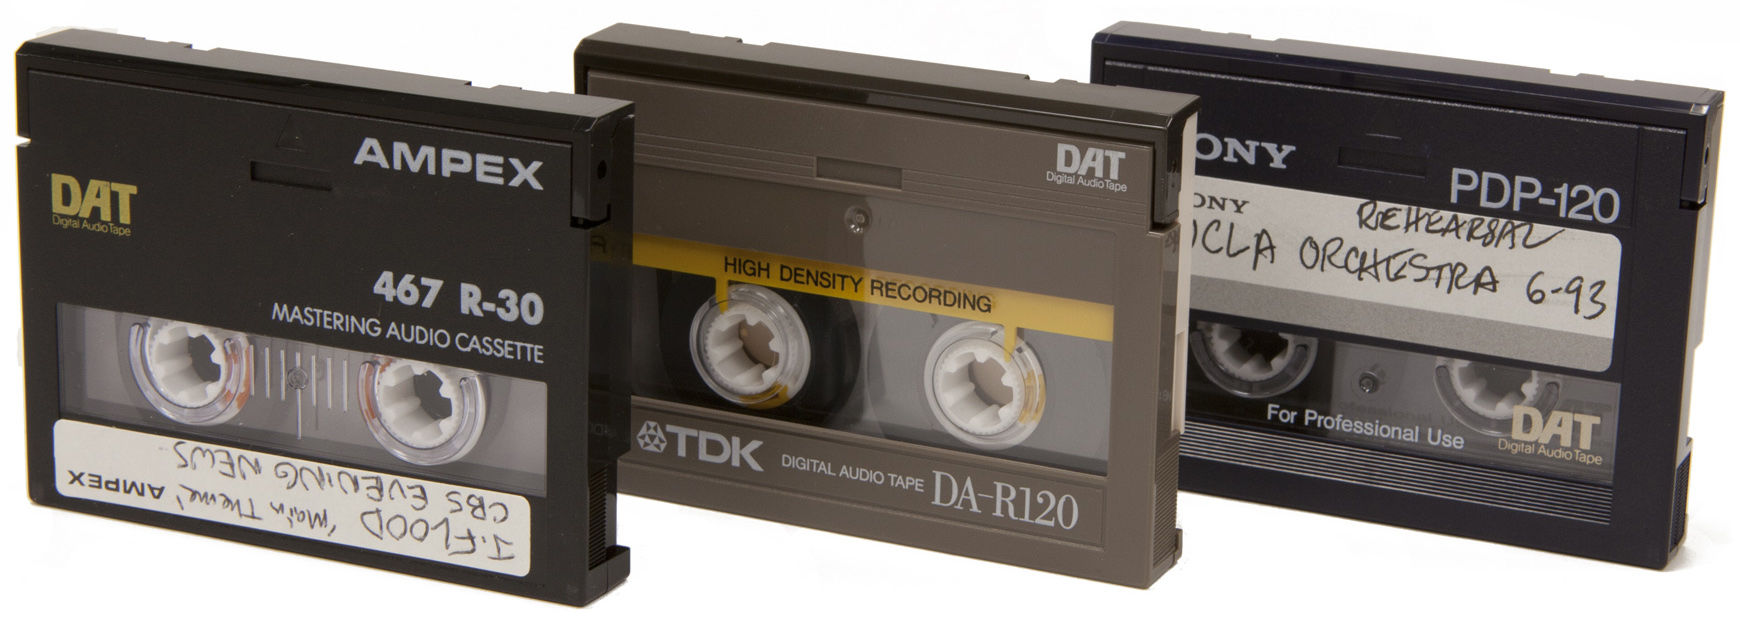 3 Each Audio Magnetics Dictation Cassette Mini Cartridge 2 x 15 Minutes 